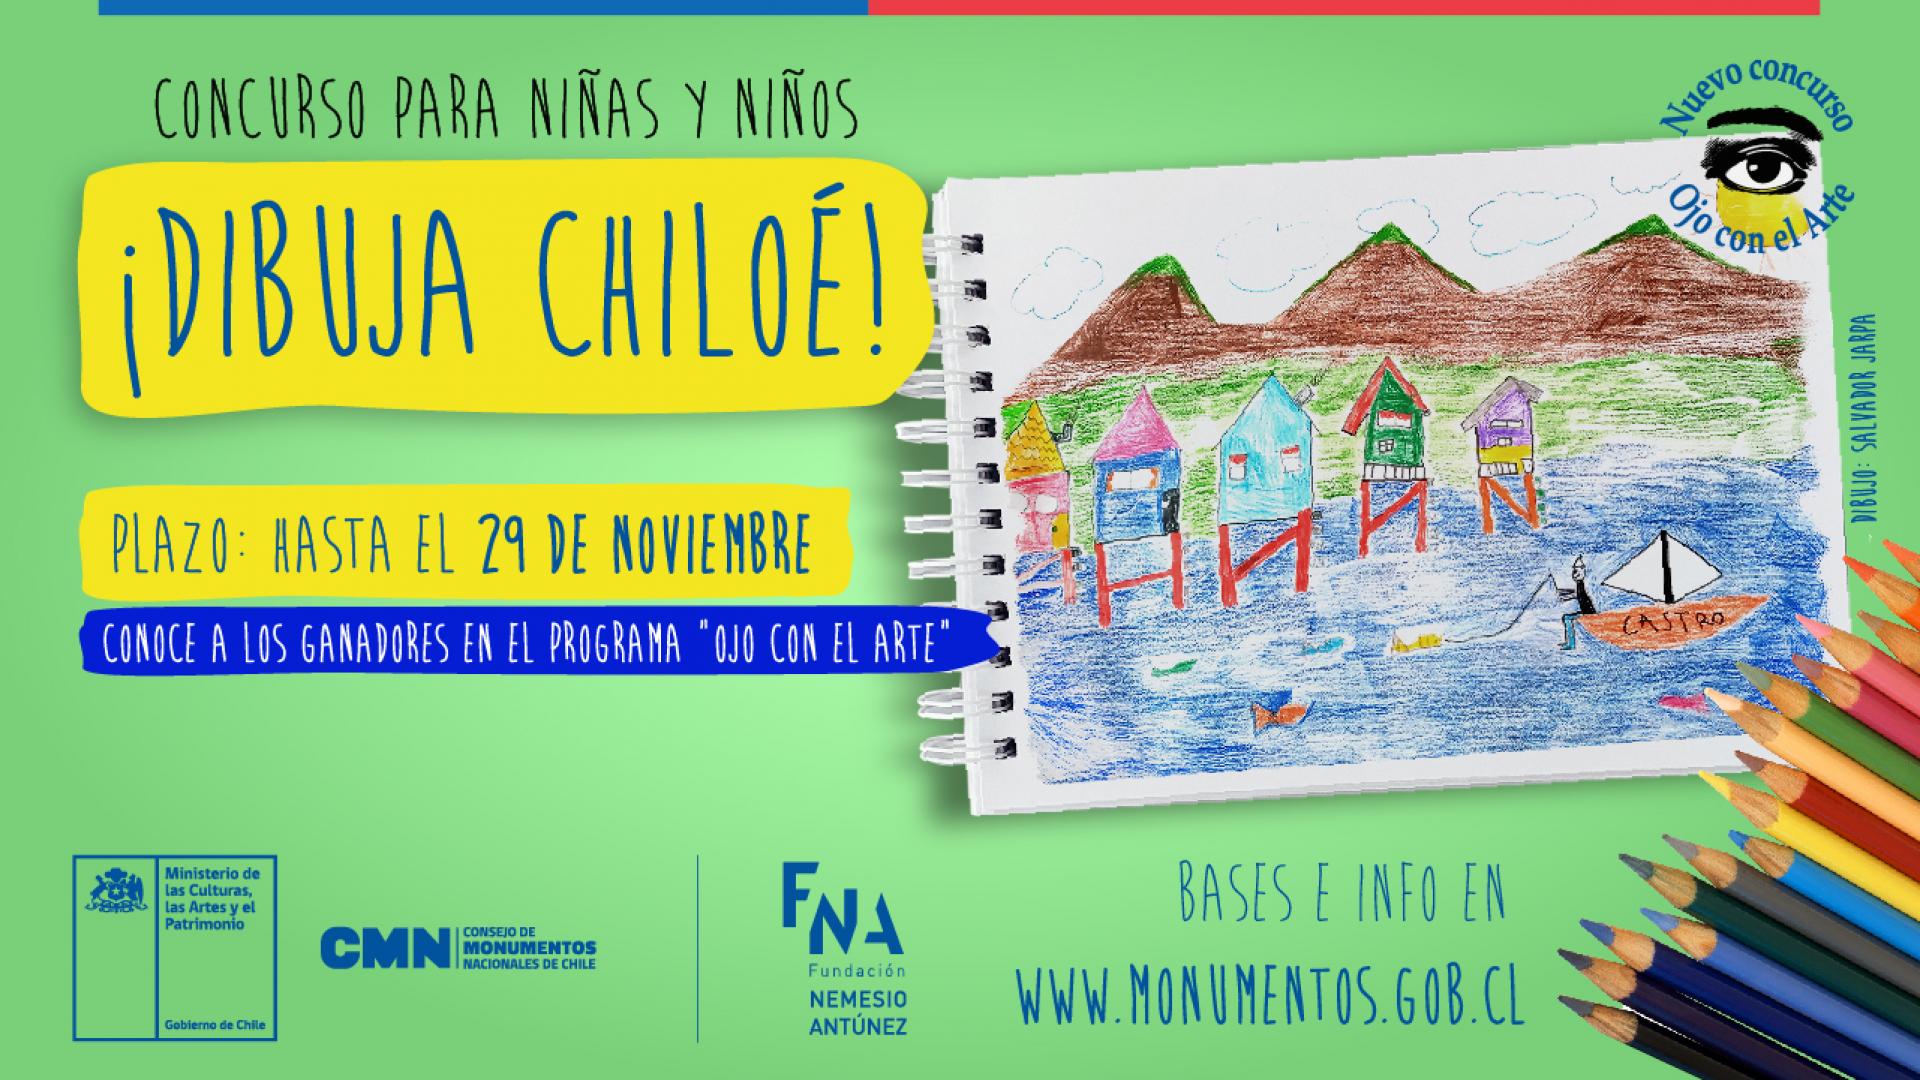 Imagen de Bases del sorteo “Chiloé: Arquitectura y ciudad” Programa “Ojo con el Arte” 05 de diciembre de 2020 